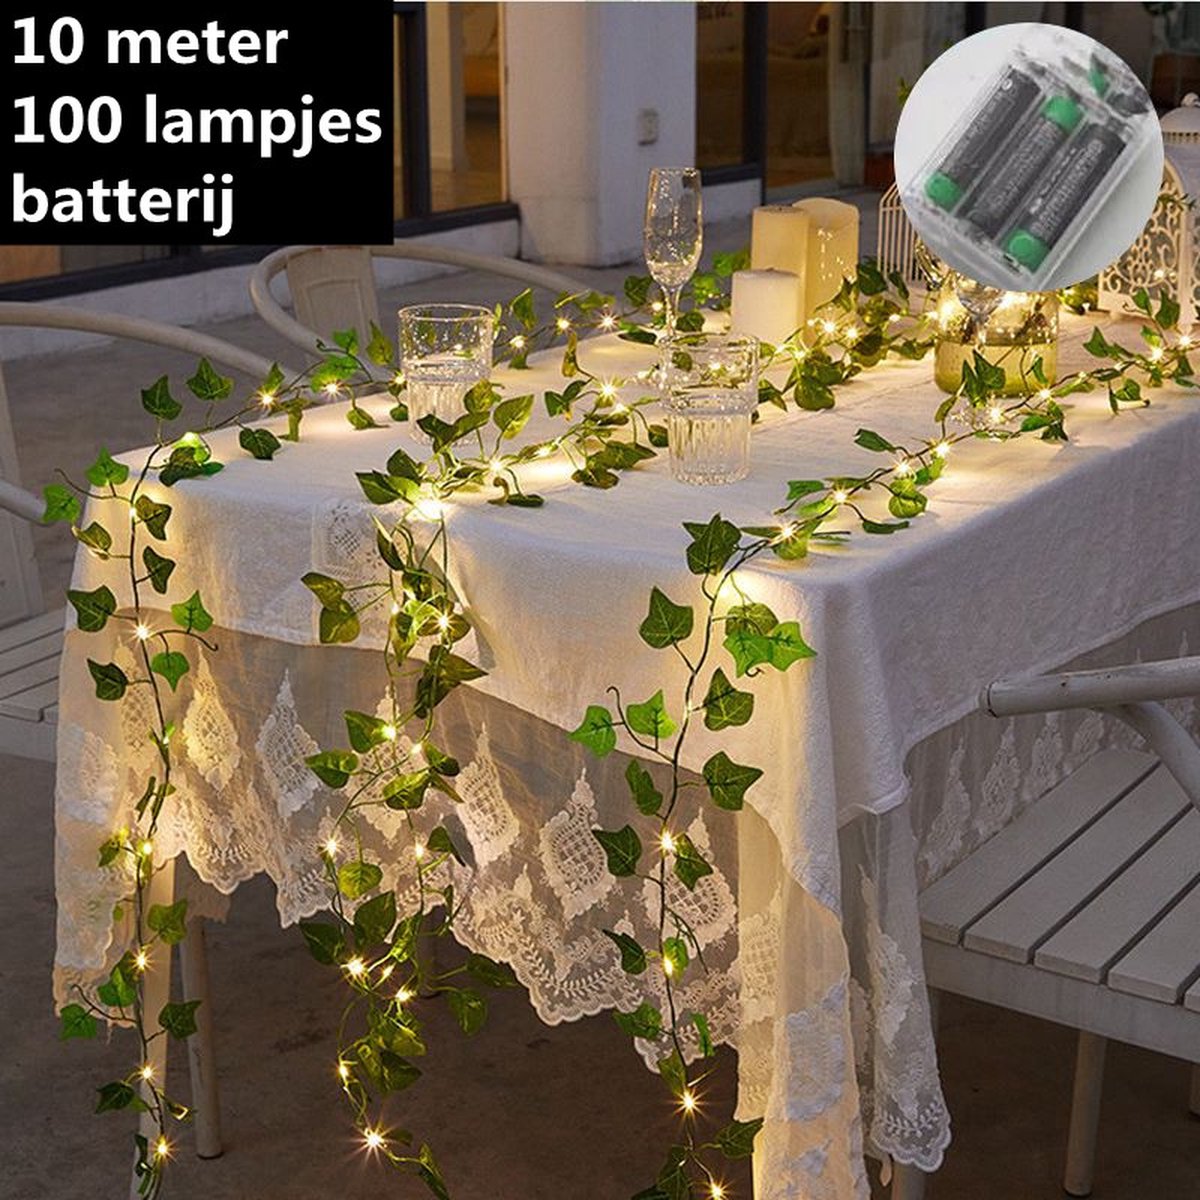 Guirlande lumineuse led - Fleurs - 3 mètres - 20 lumières - Roses - Wit -  Lumière